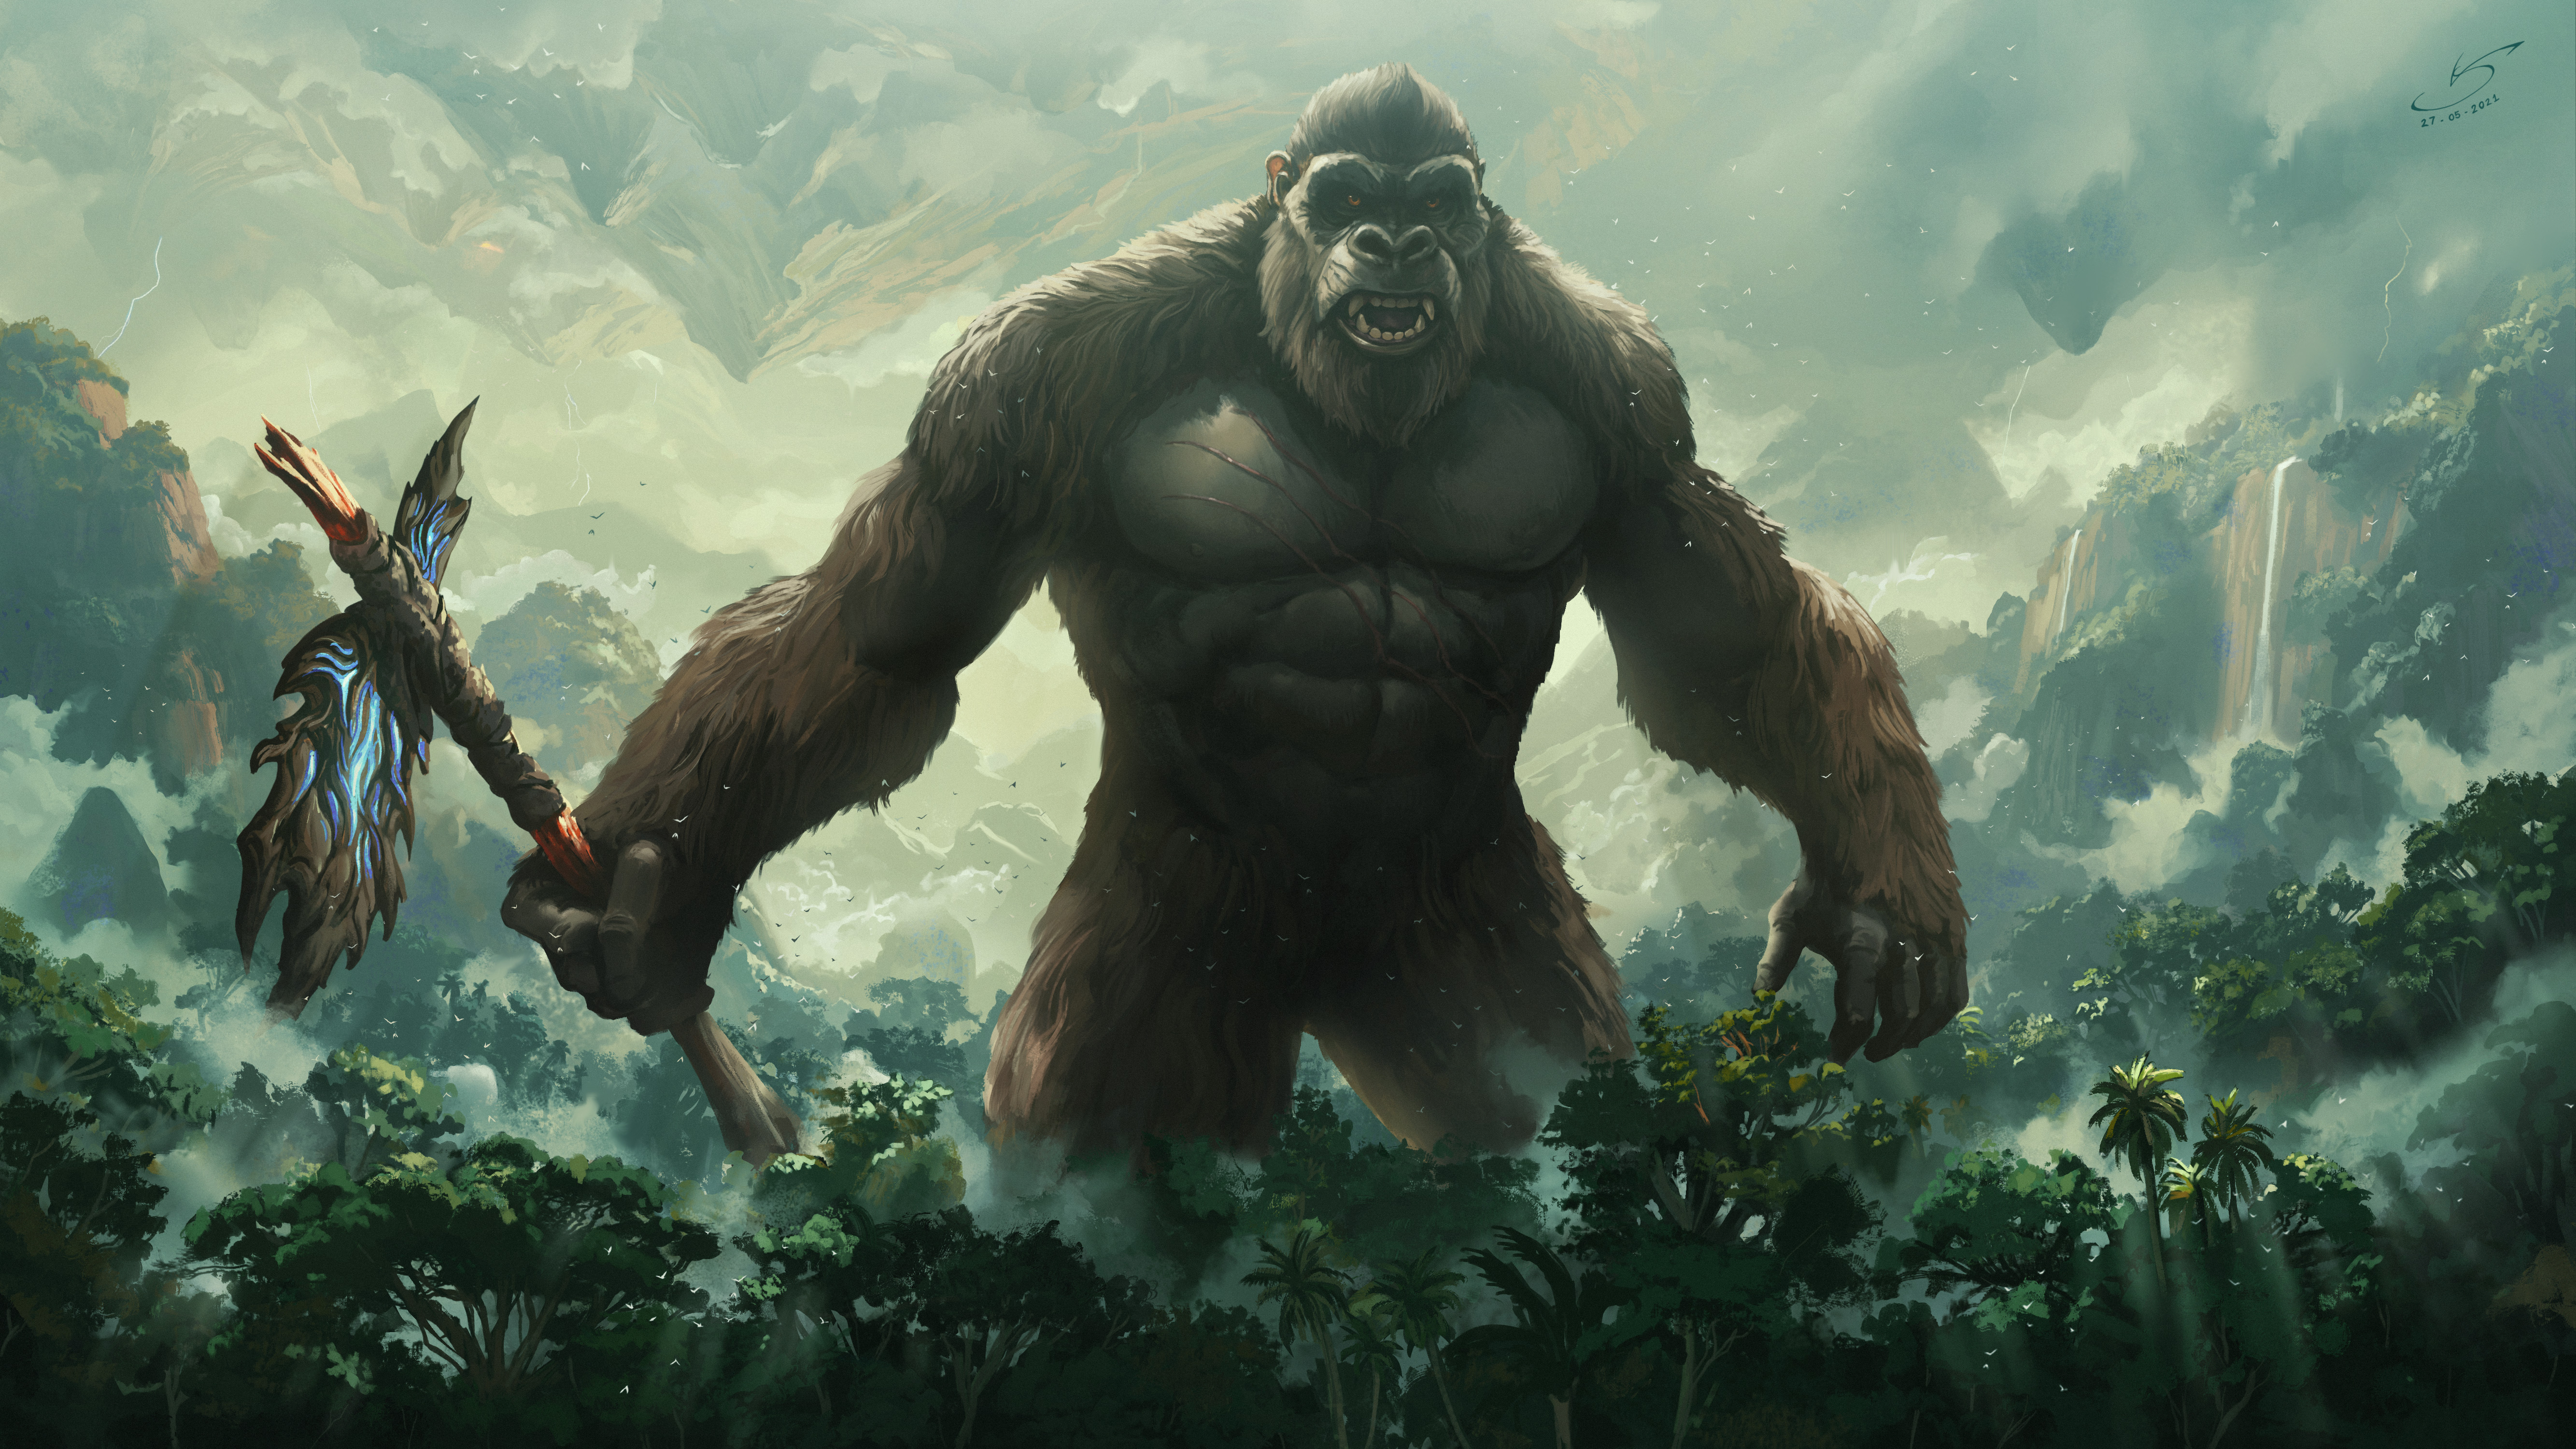 VSales Digital Art Digital Artwork Illustration Fan Art King Kong Godzilla Vs Kong Jungle Kong Skull 5334x3000